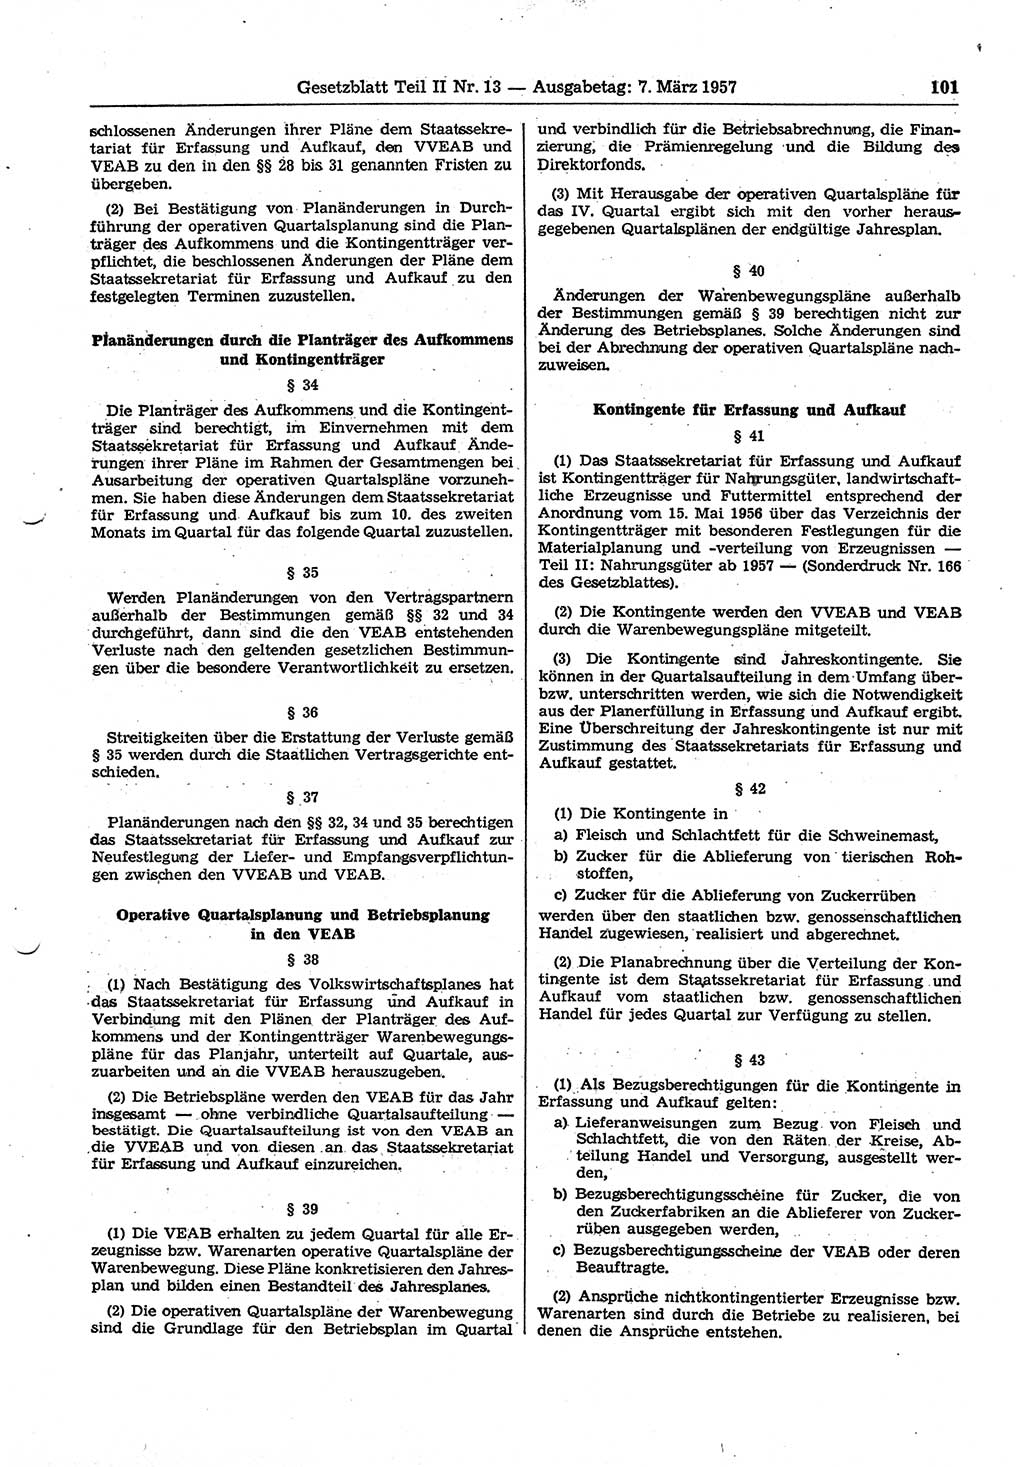 Gesetzblatt (GBl.) der Deutschen Demokratischen Republik (DDR) Teil ⅠⅠ 1957, Seite 101 (GBl. DDR ⅠⅠ 1957, S. 101)